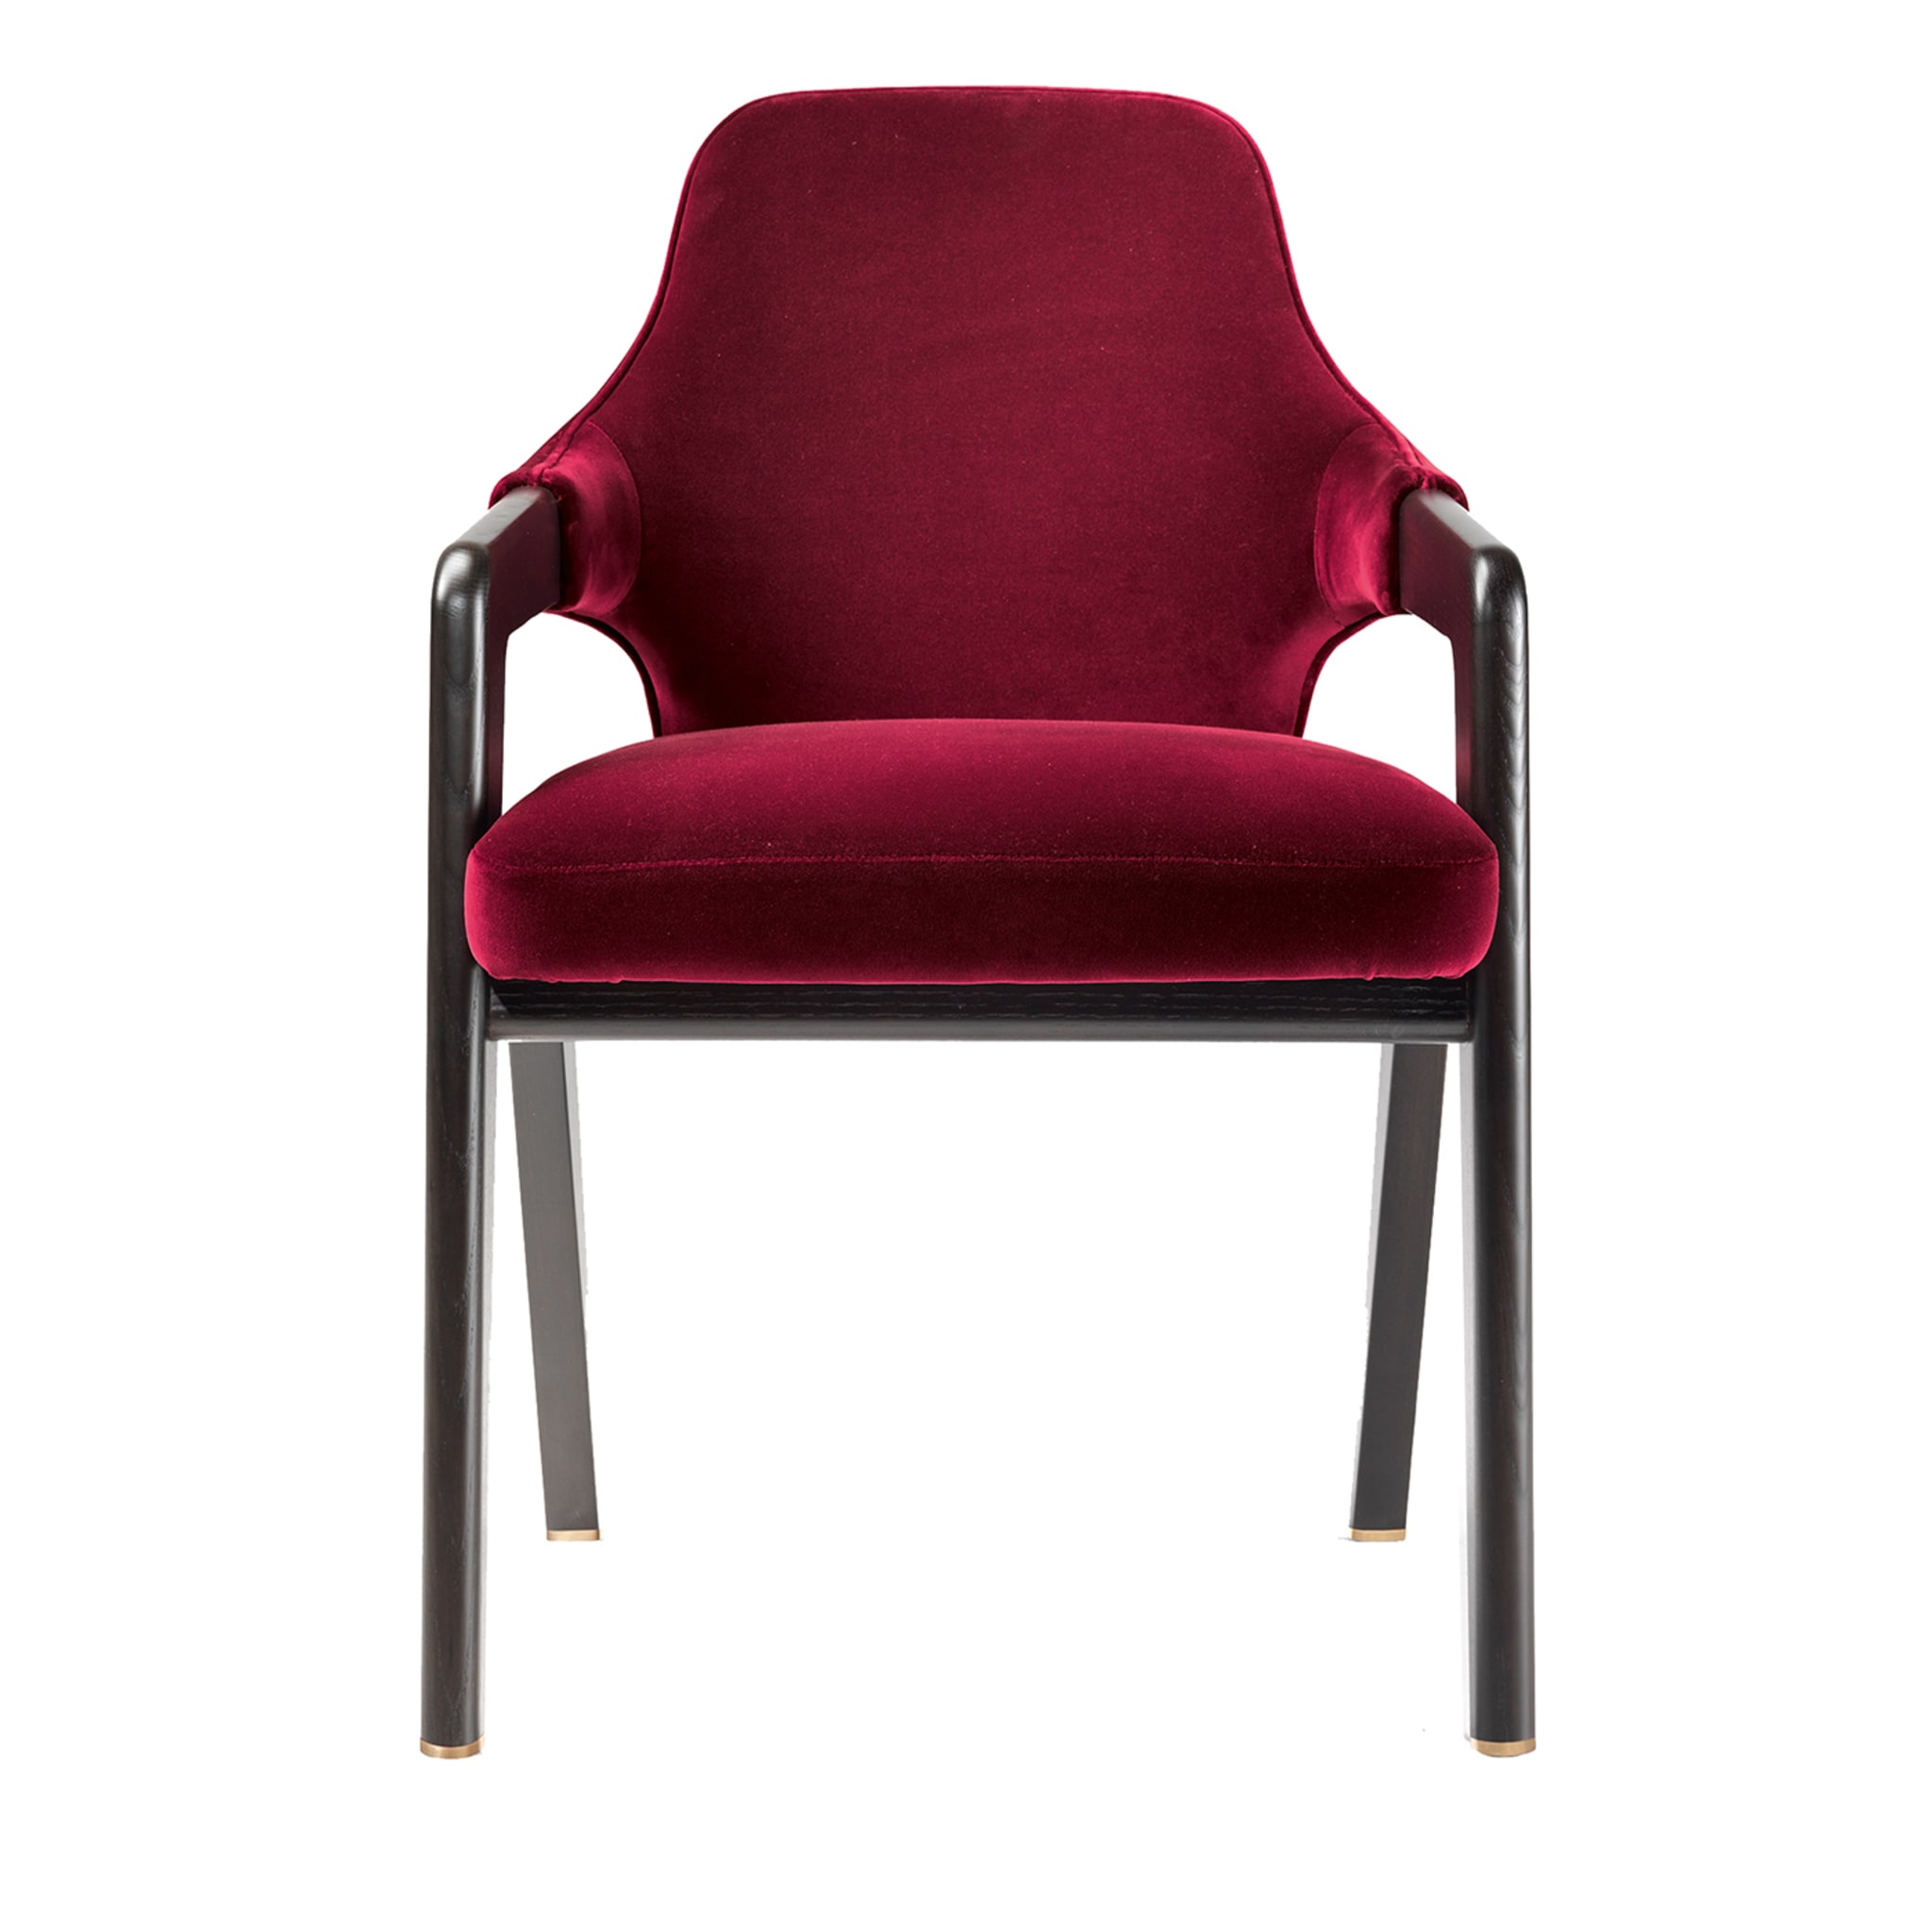 DL02 Roter Stuhl - Hauptansicht